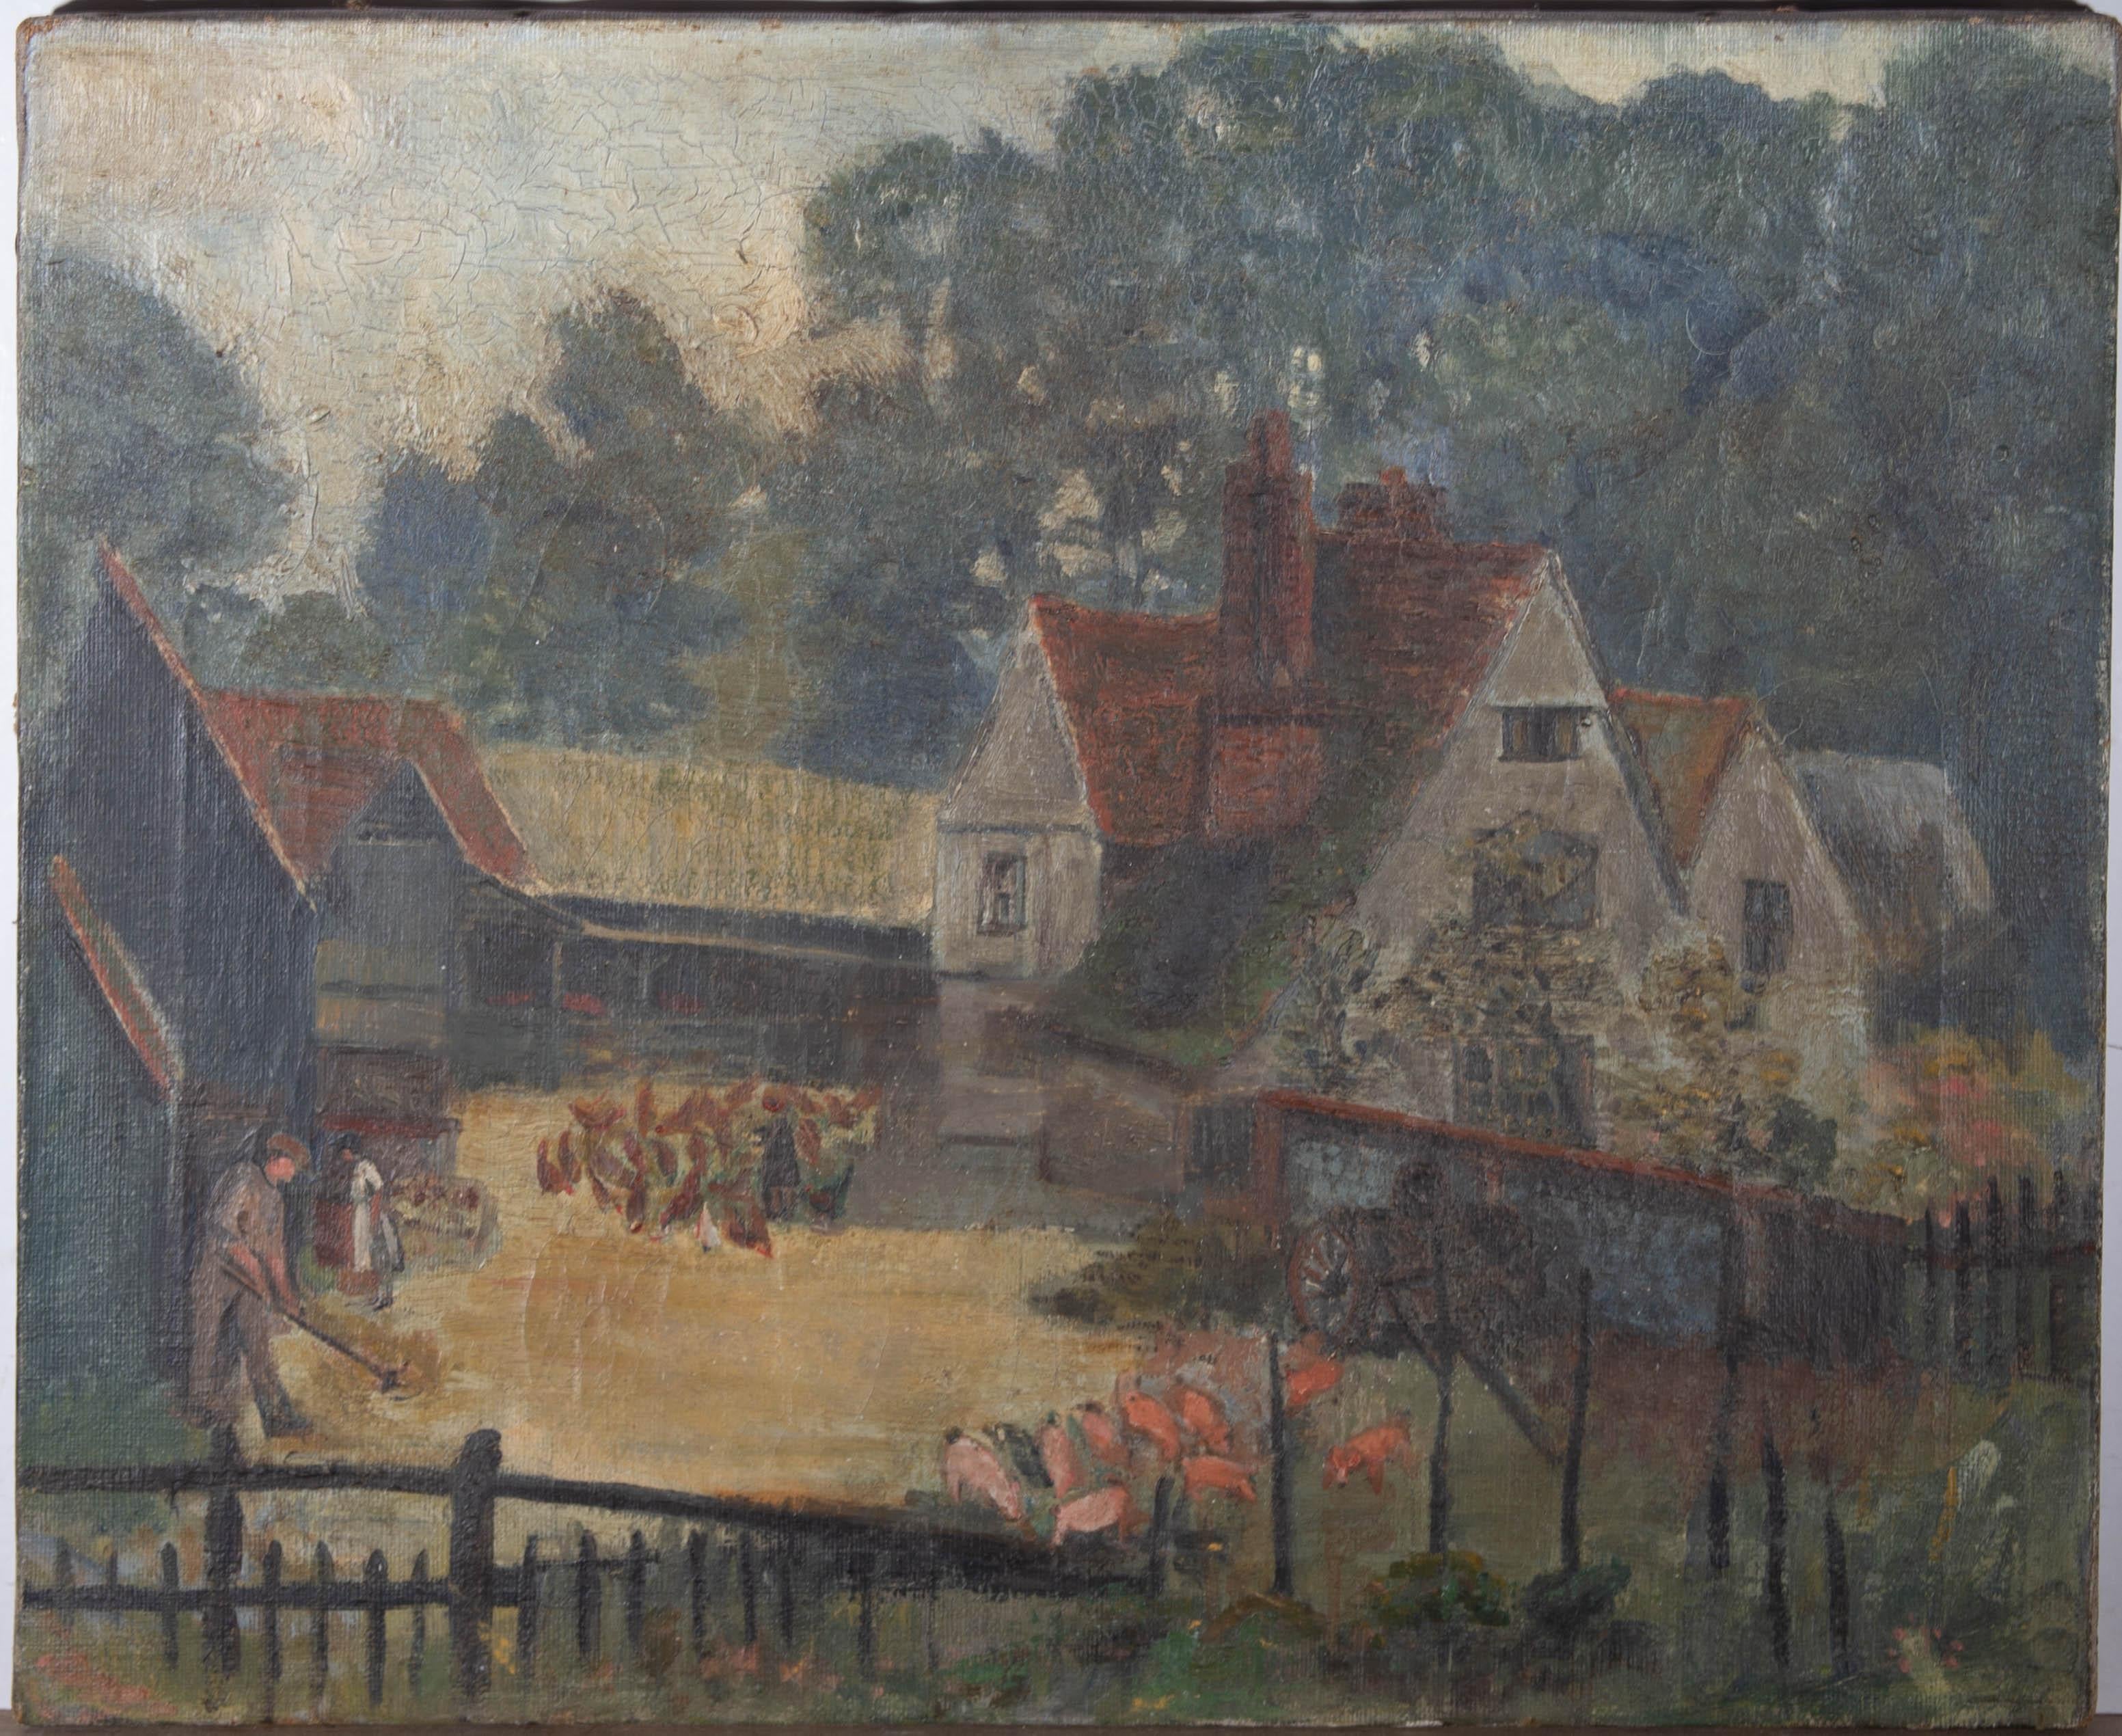 Huile naïve du début du XXe siècle - The Busy Farmyard - Painting de Unknown